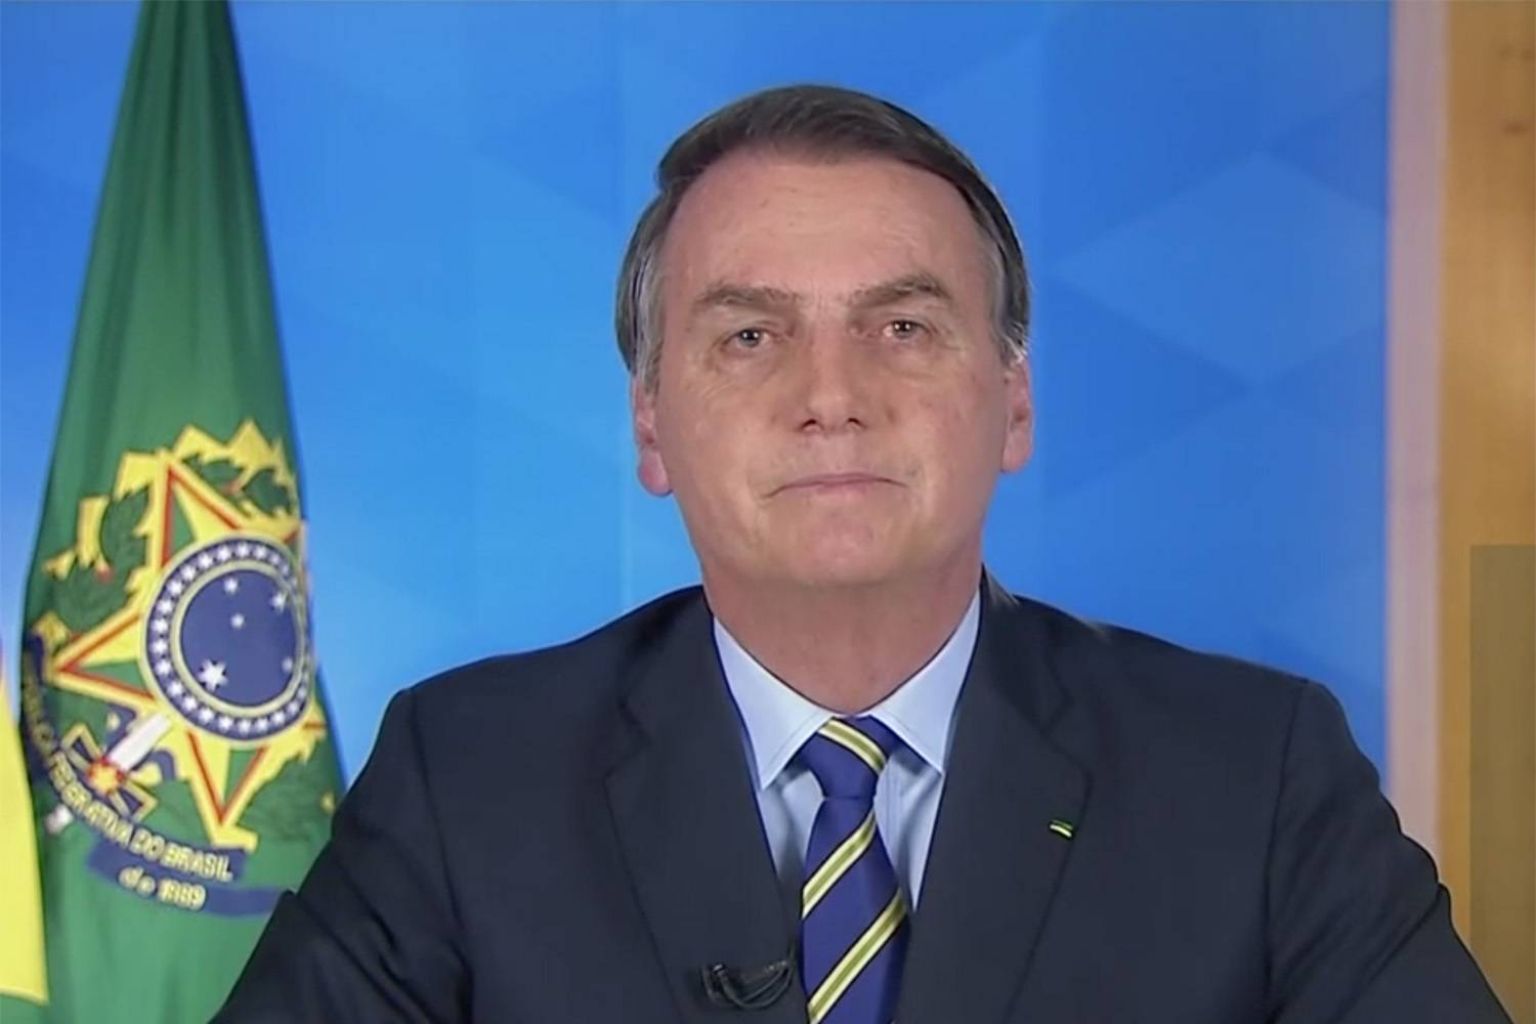 Artigo: Bolsonaro e a epidemia da mentira